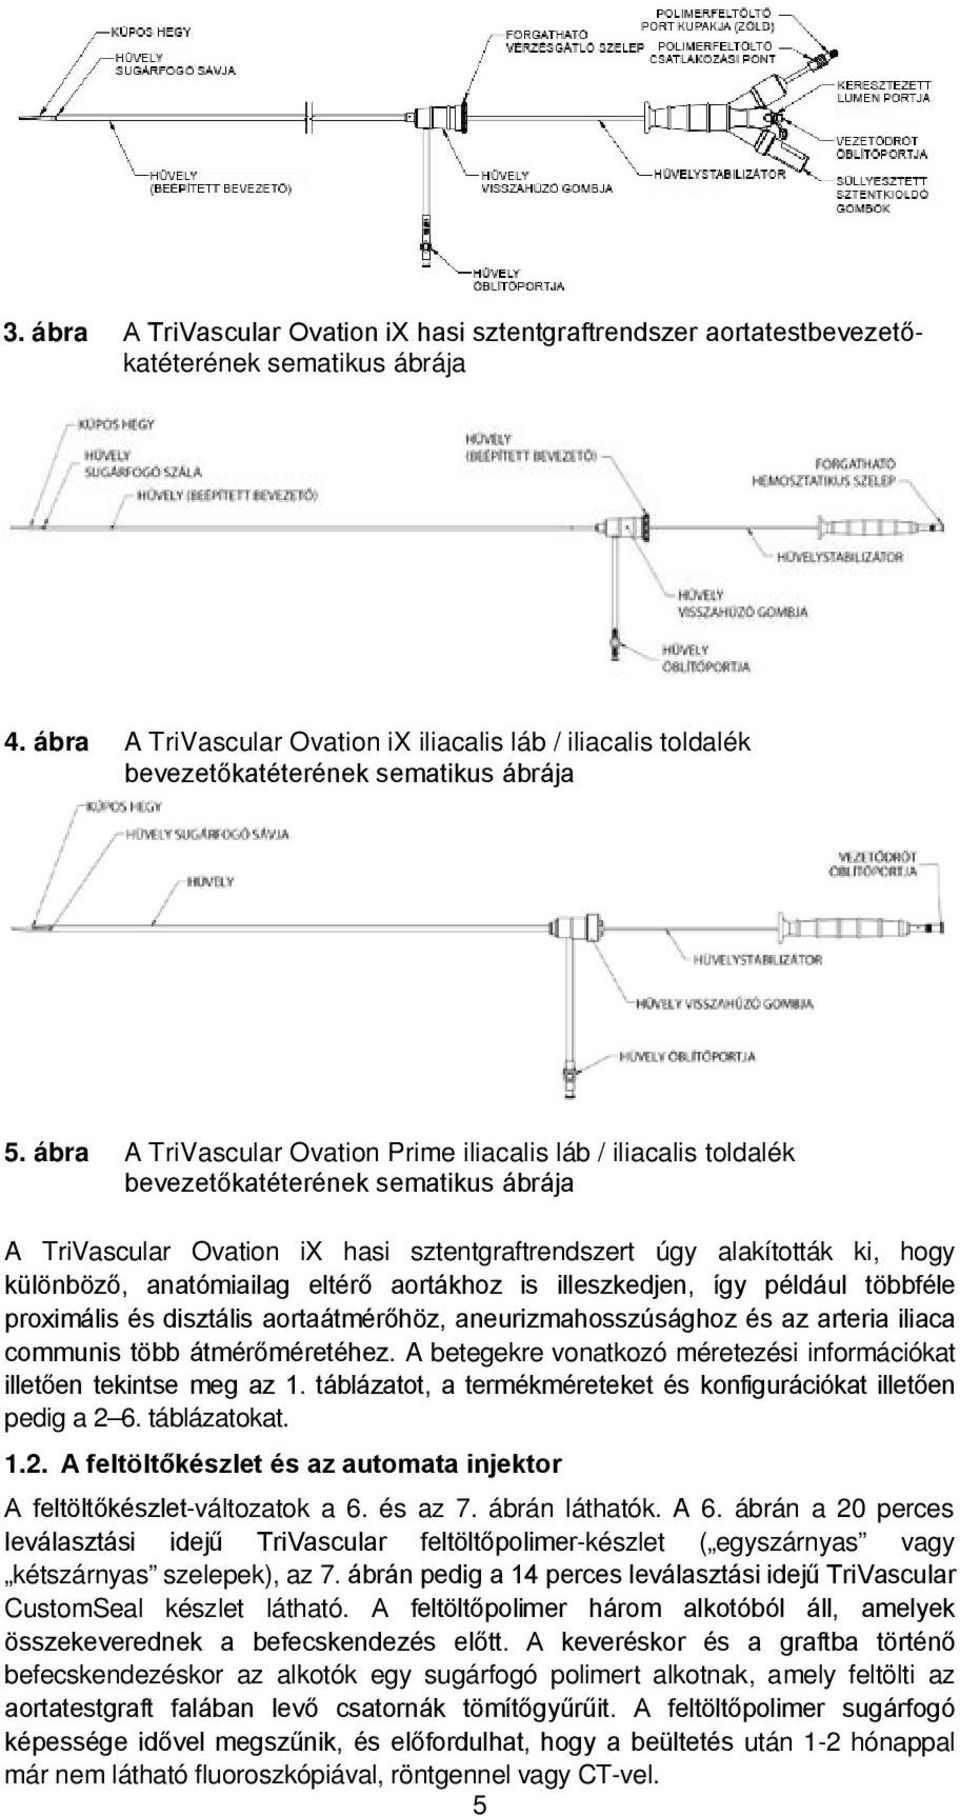 ábra A TriVascular Ovation Prime iliacalis láb / iliacalis toldalék bevezetőkatéterének sematikus ábrája A TriVascular Ovation ix hasi sztentgraftrendszert úgy alakították ki, hogy különböző,